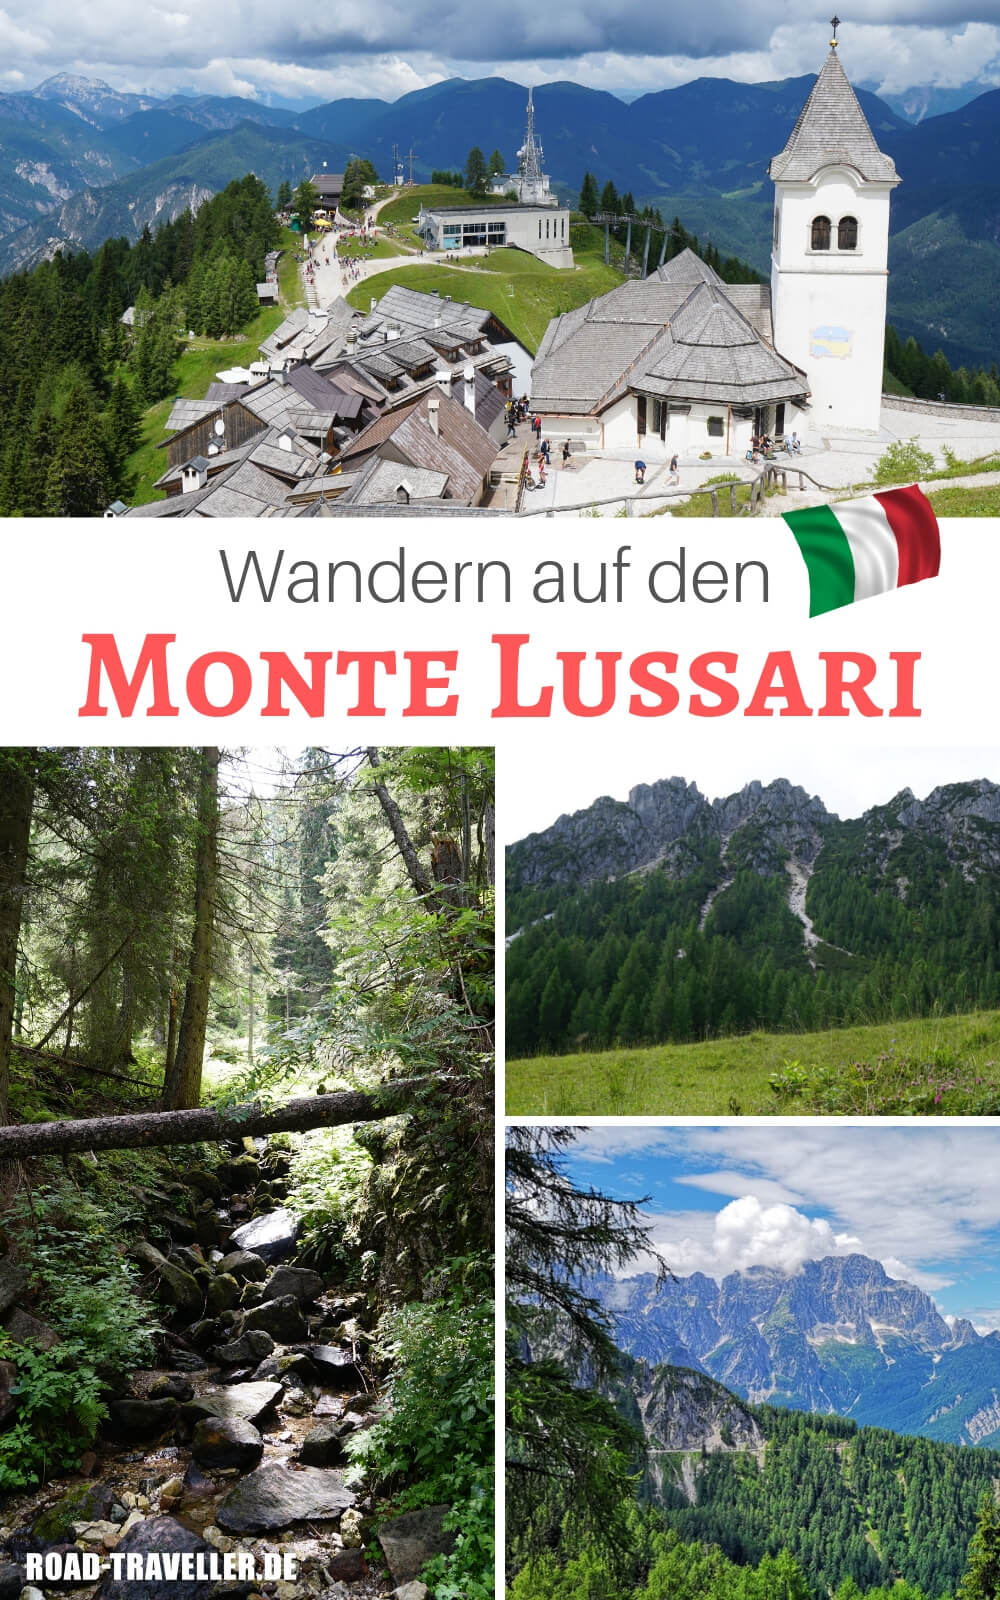 Wanderung auf den Monte Lussari im Dreilaendereck Italien, Oesterreich und Slowenien